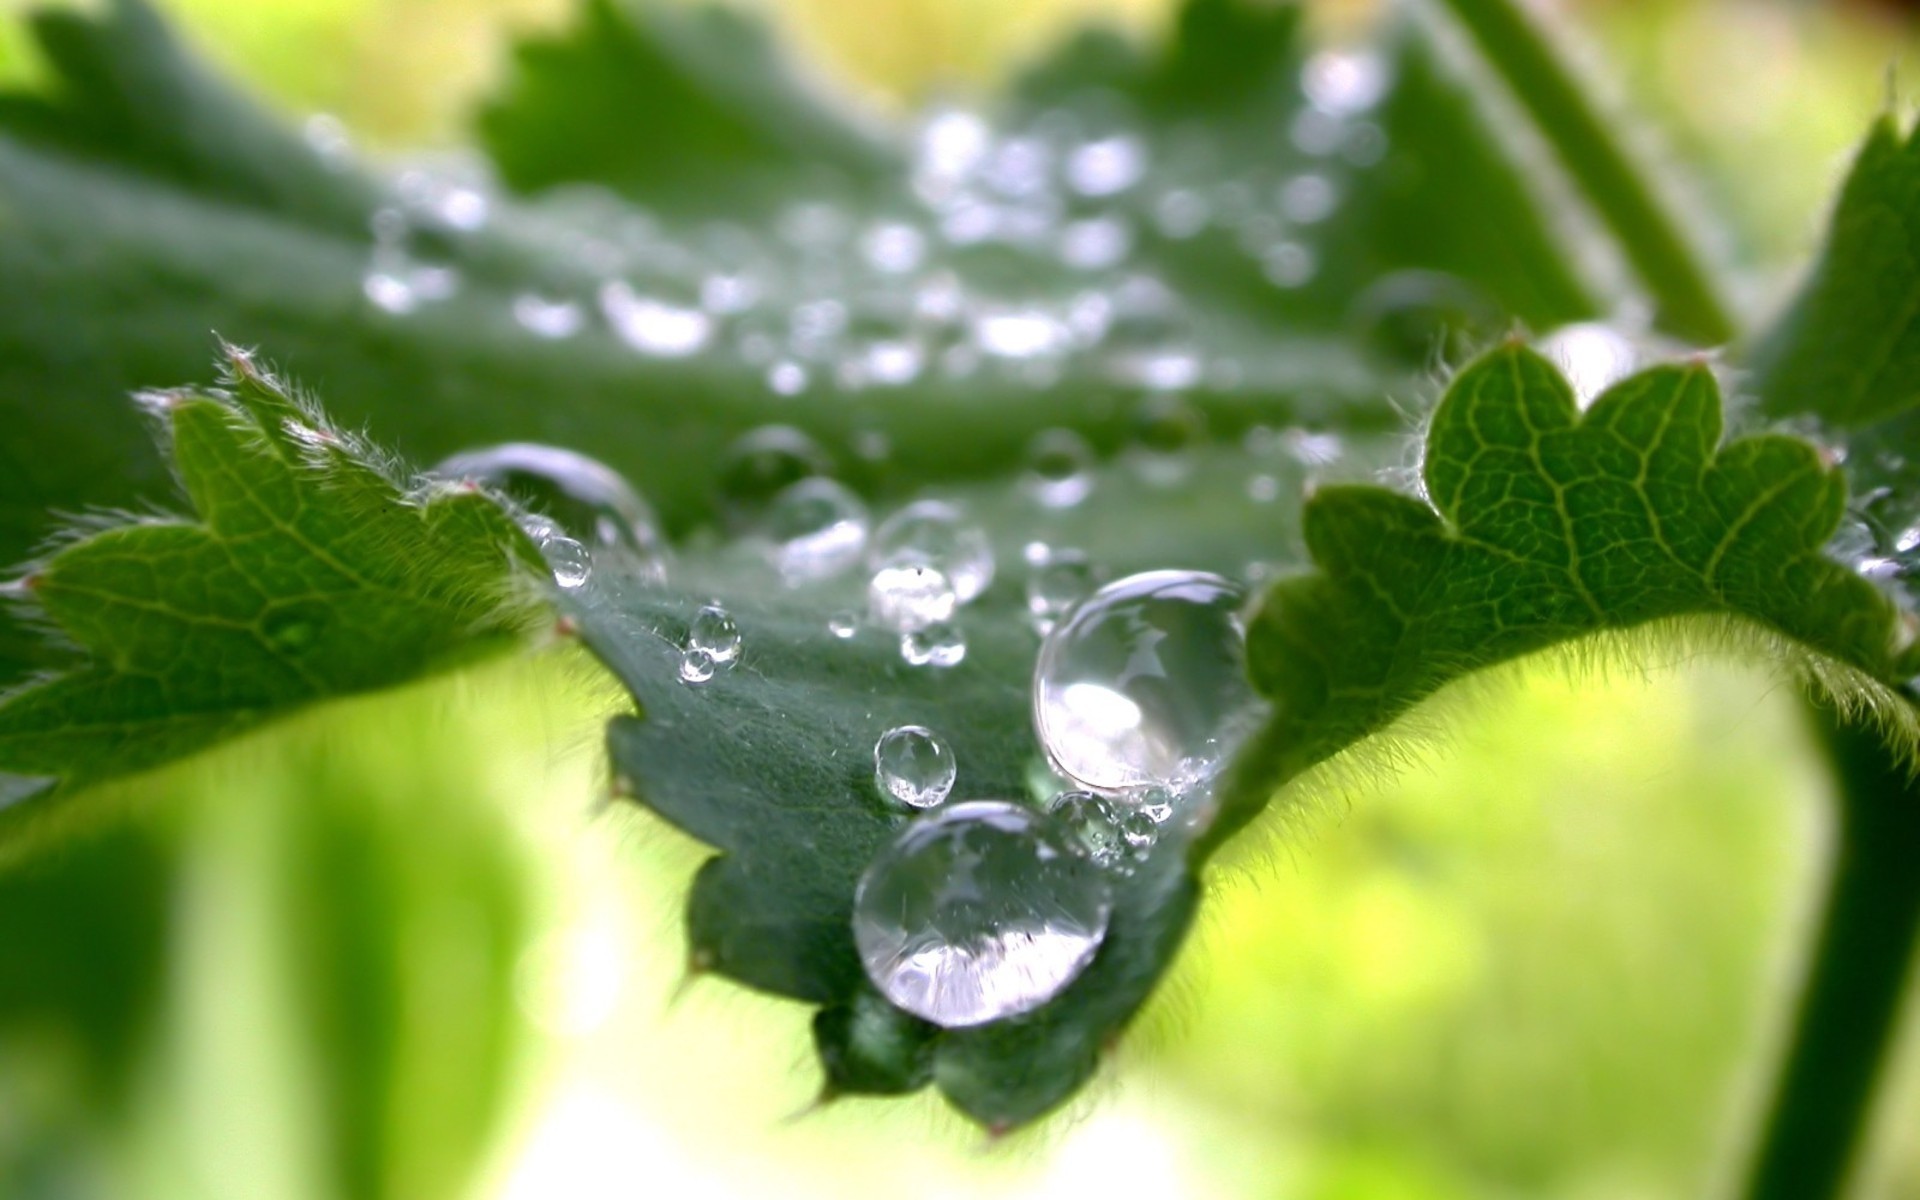 растения падение лист росы флора дождь мокрый природа свежесть рост чистота капли сад воды крупным планом среды жидкость лето рядом цвет зеленый